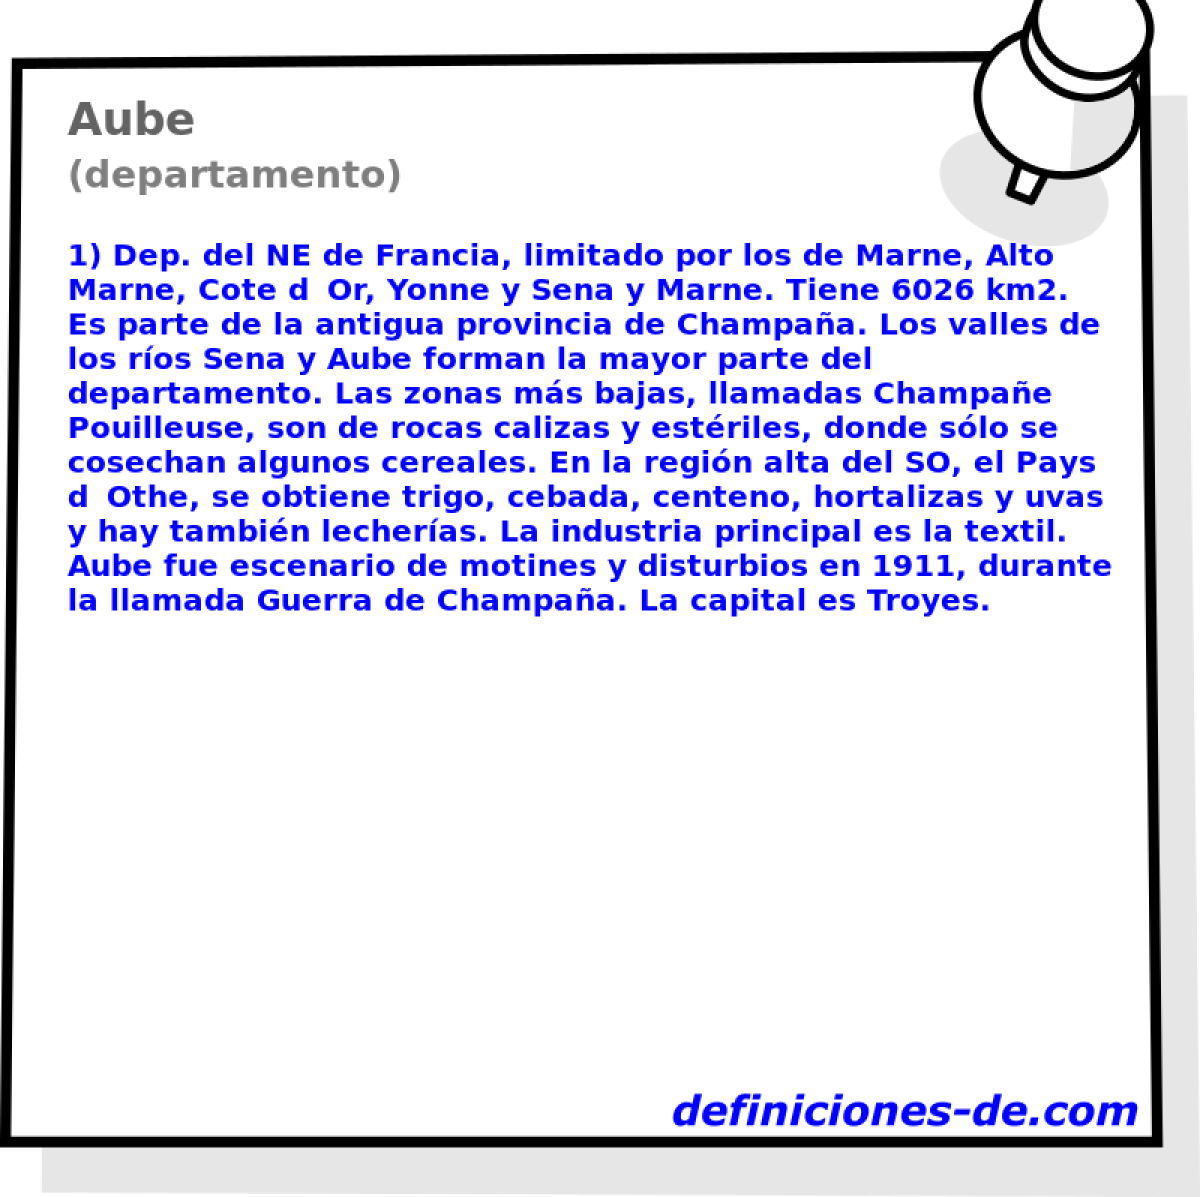 Aube (departamento)